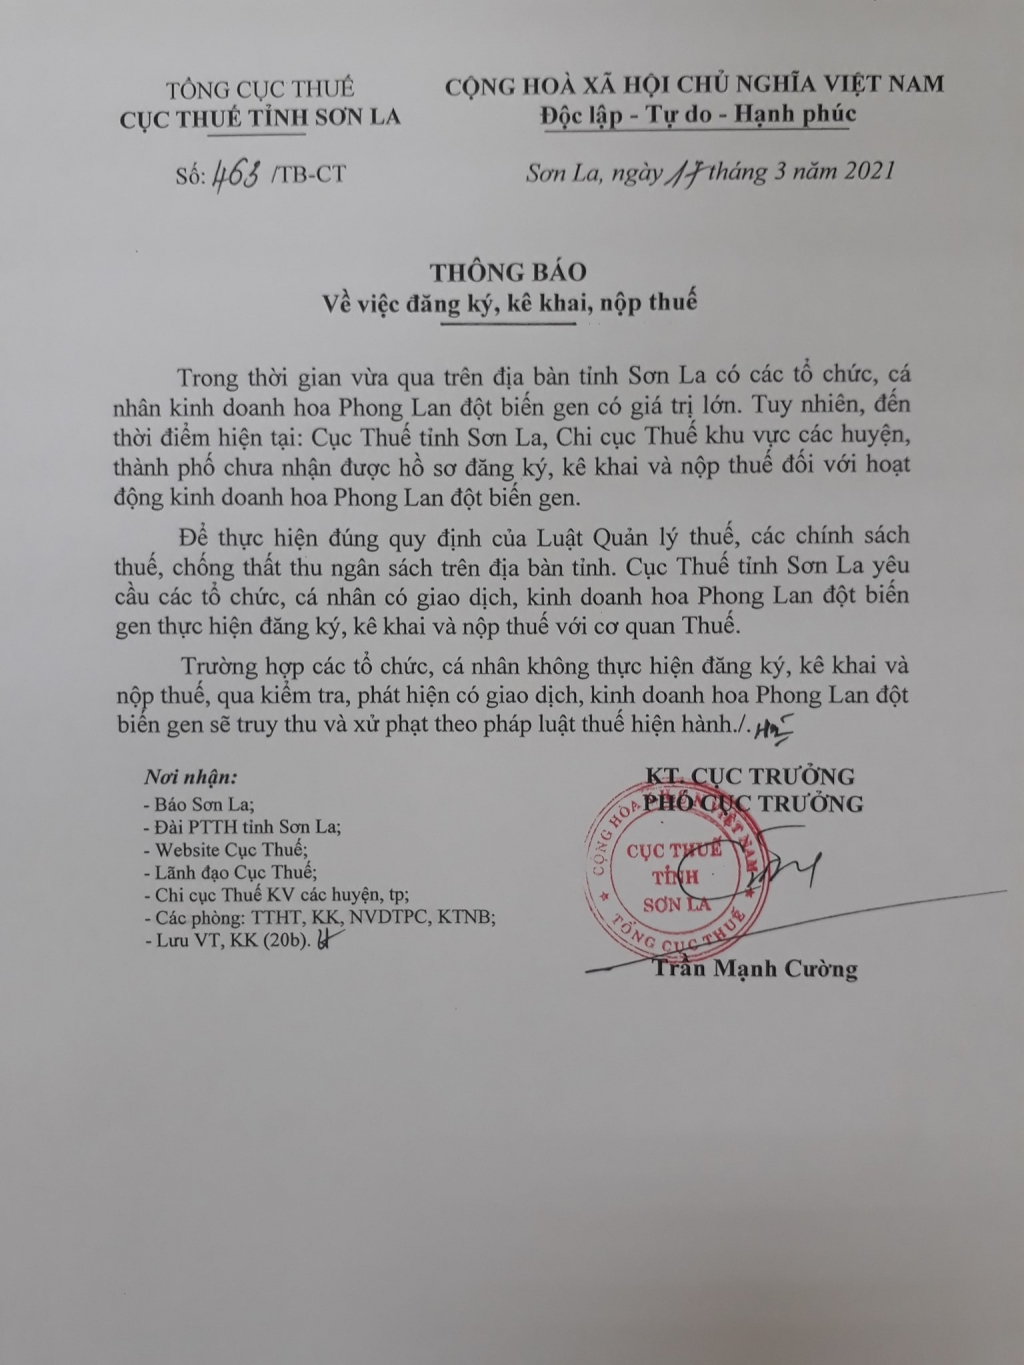 Văn bản thông báo của Cục thuế tỉnh Sơn La